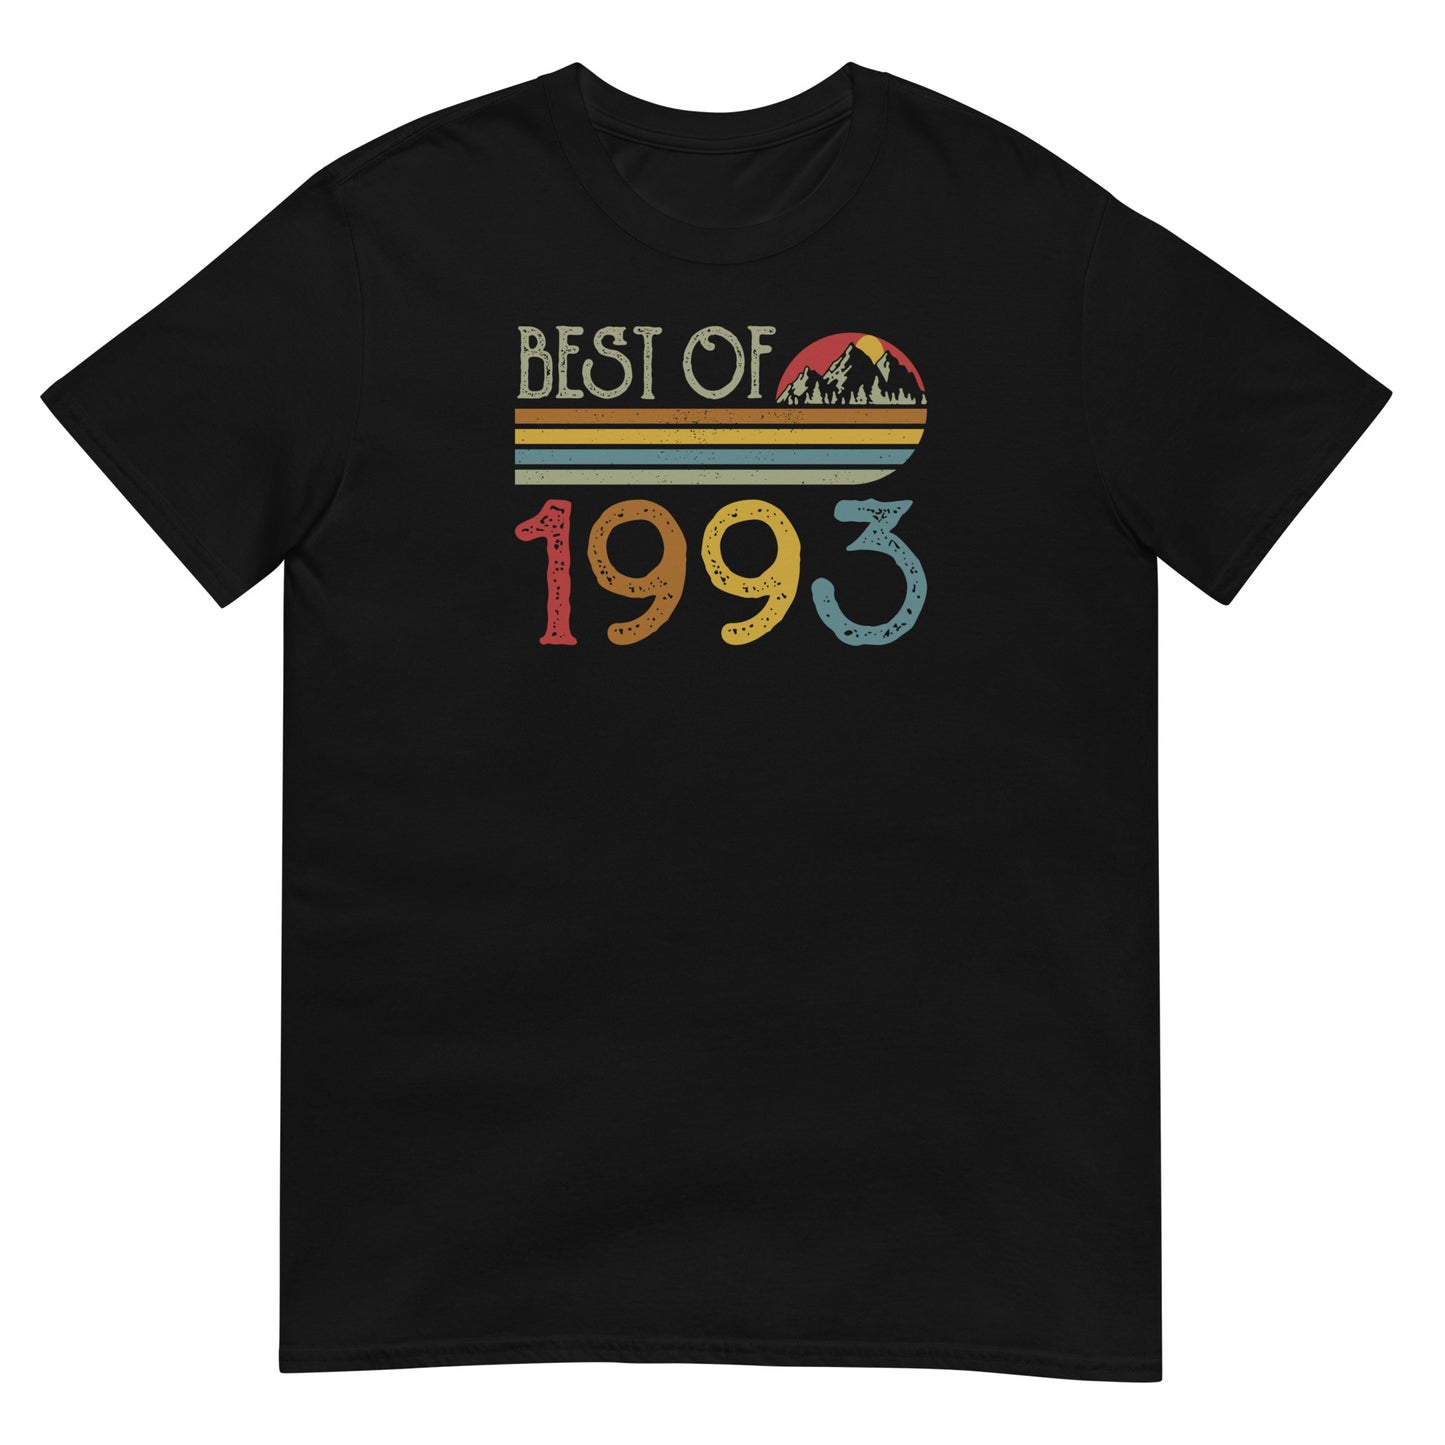 Camiseta Best Of 1993 - Cumpleaños